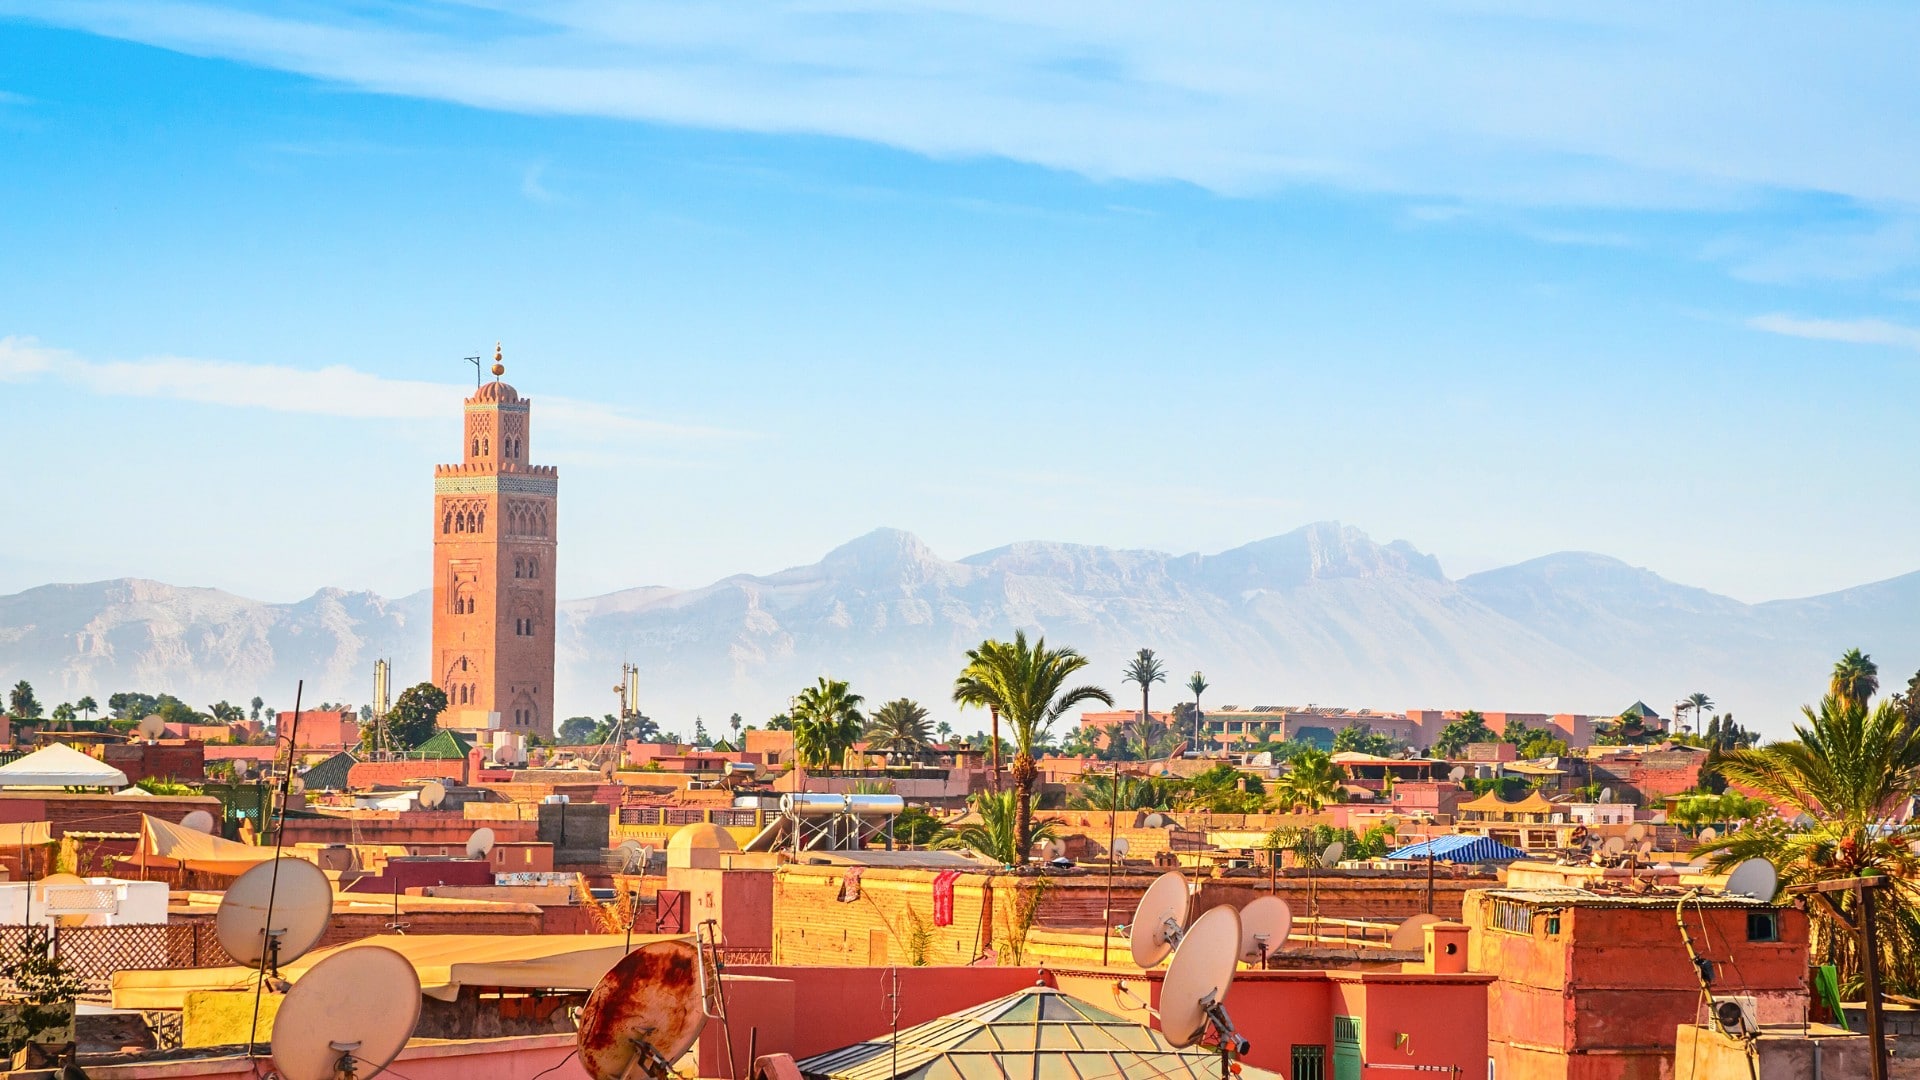 Viajas a Marruecos? Conoce algunas curiosidades del té marroquí